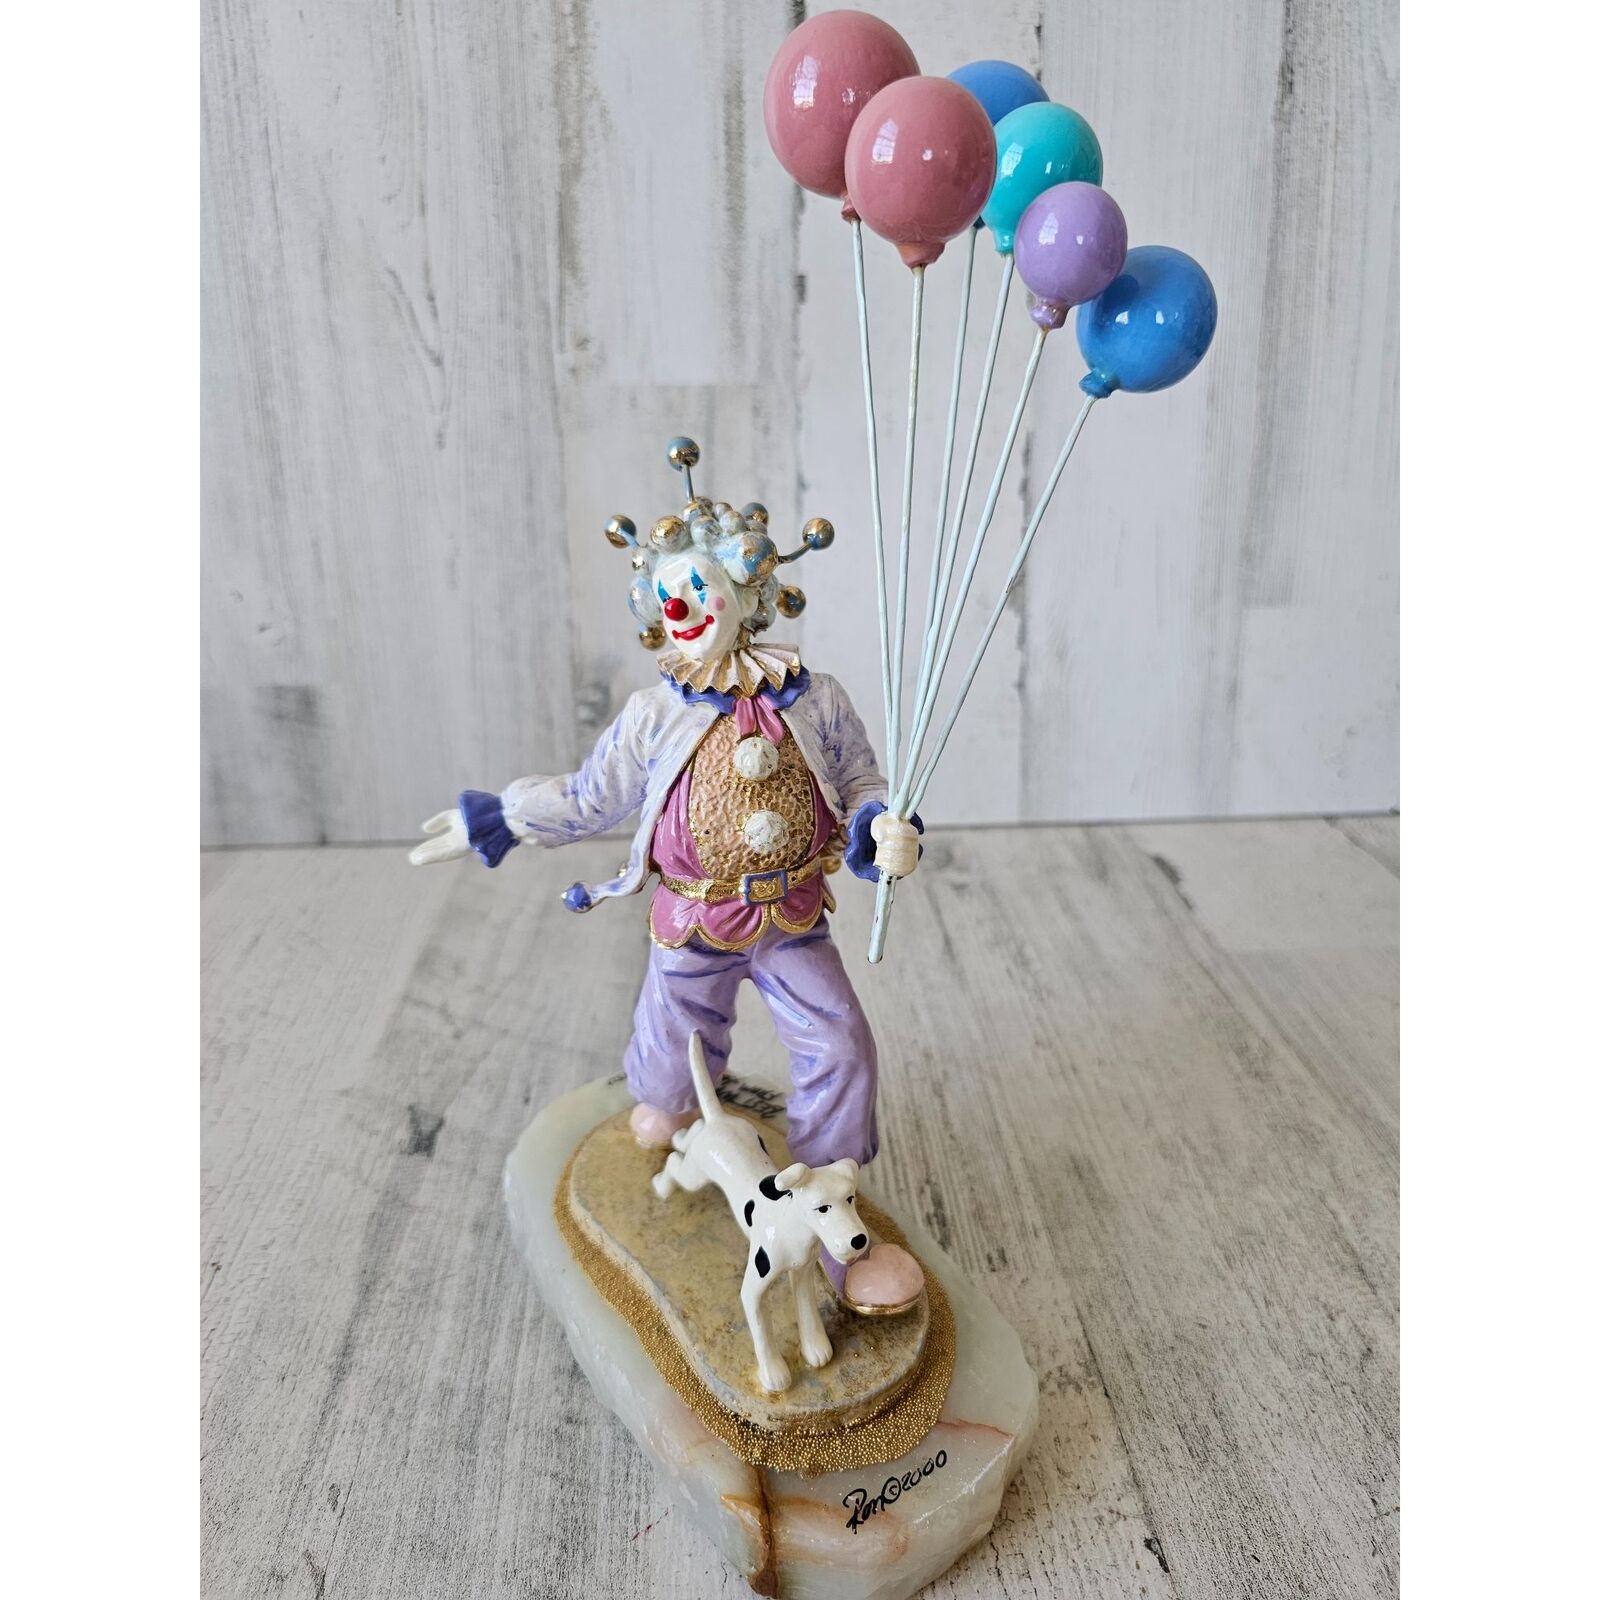 Ron Lee pepe clown dog balloons pastel walking circus Gold vintage 2000